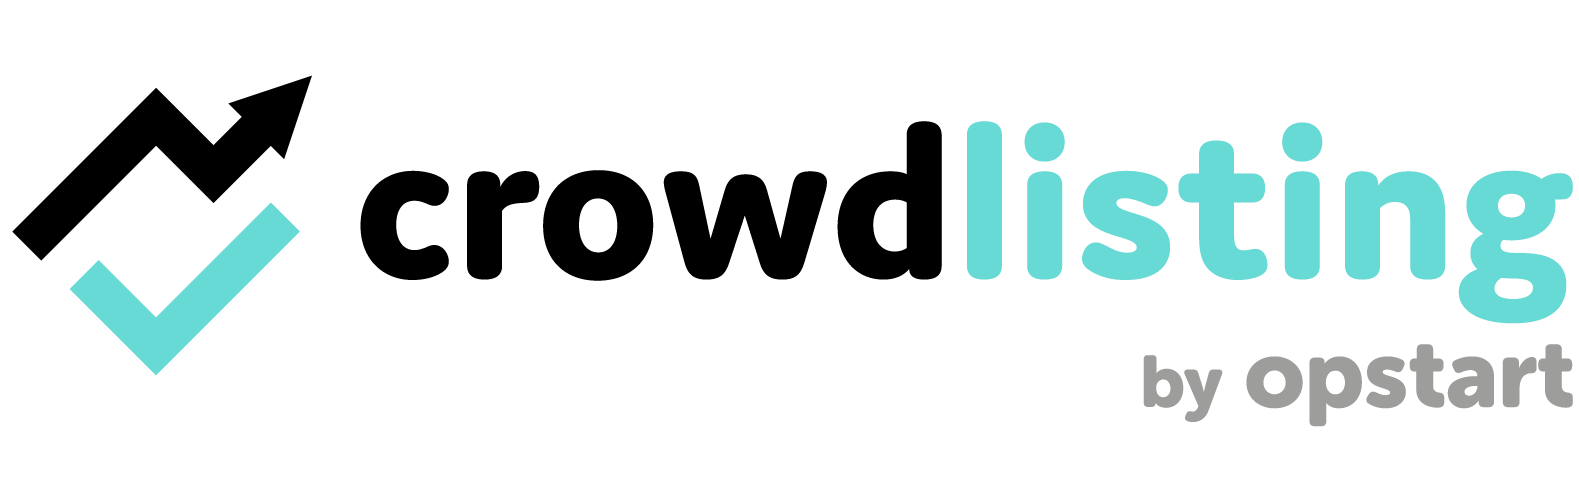 logo di Crowdlisting marchio registrato di Opstart